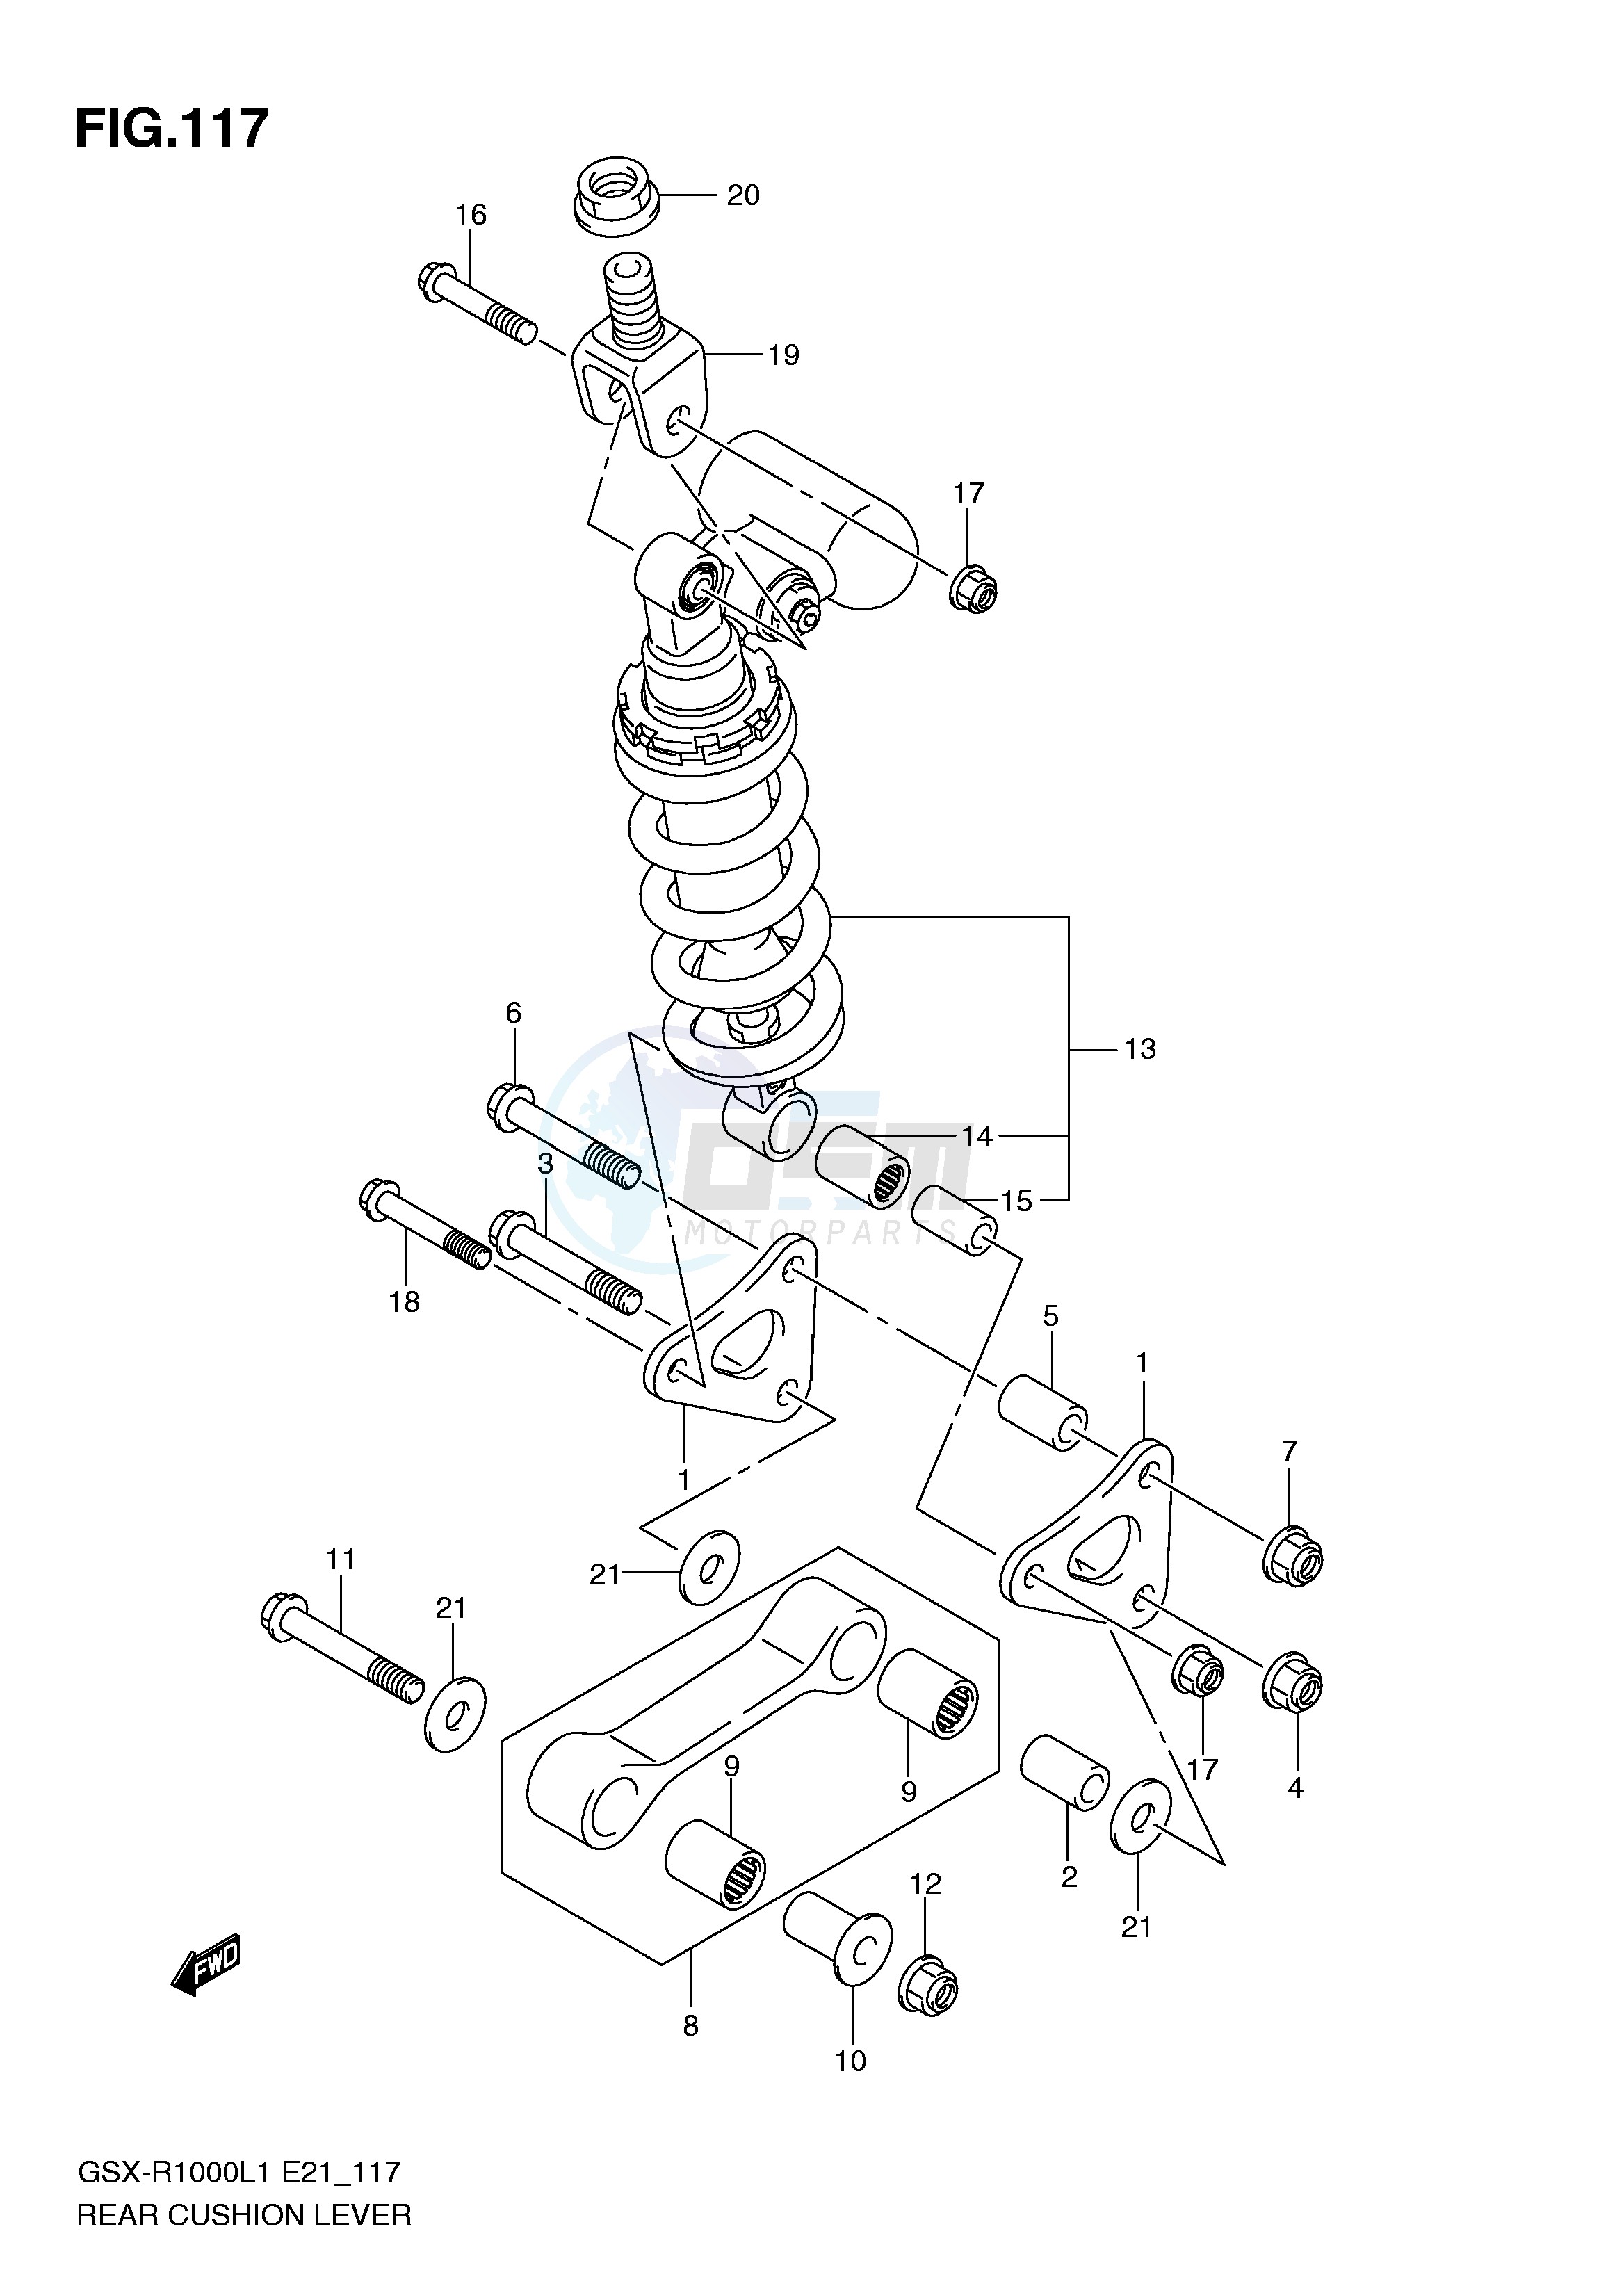 REAR CUSHION LEVER (GSX-R1000UFL1 E21) blueprint